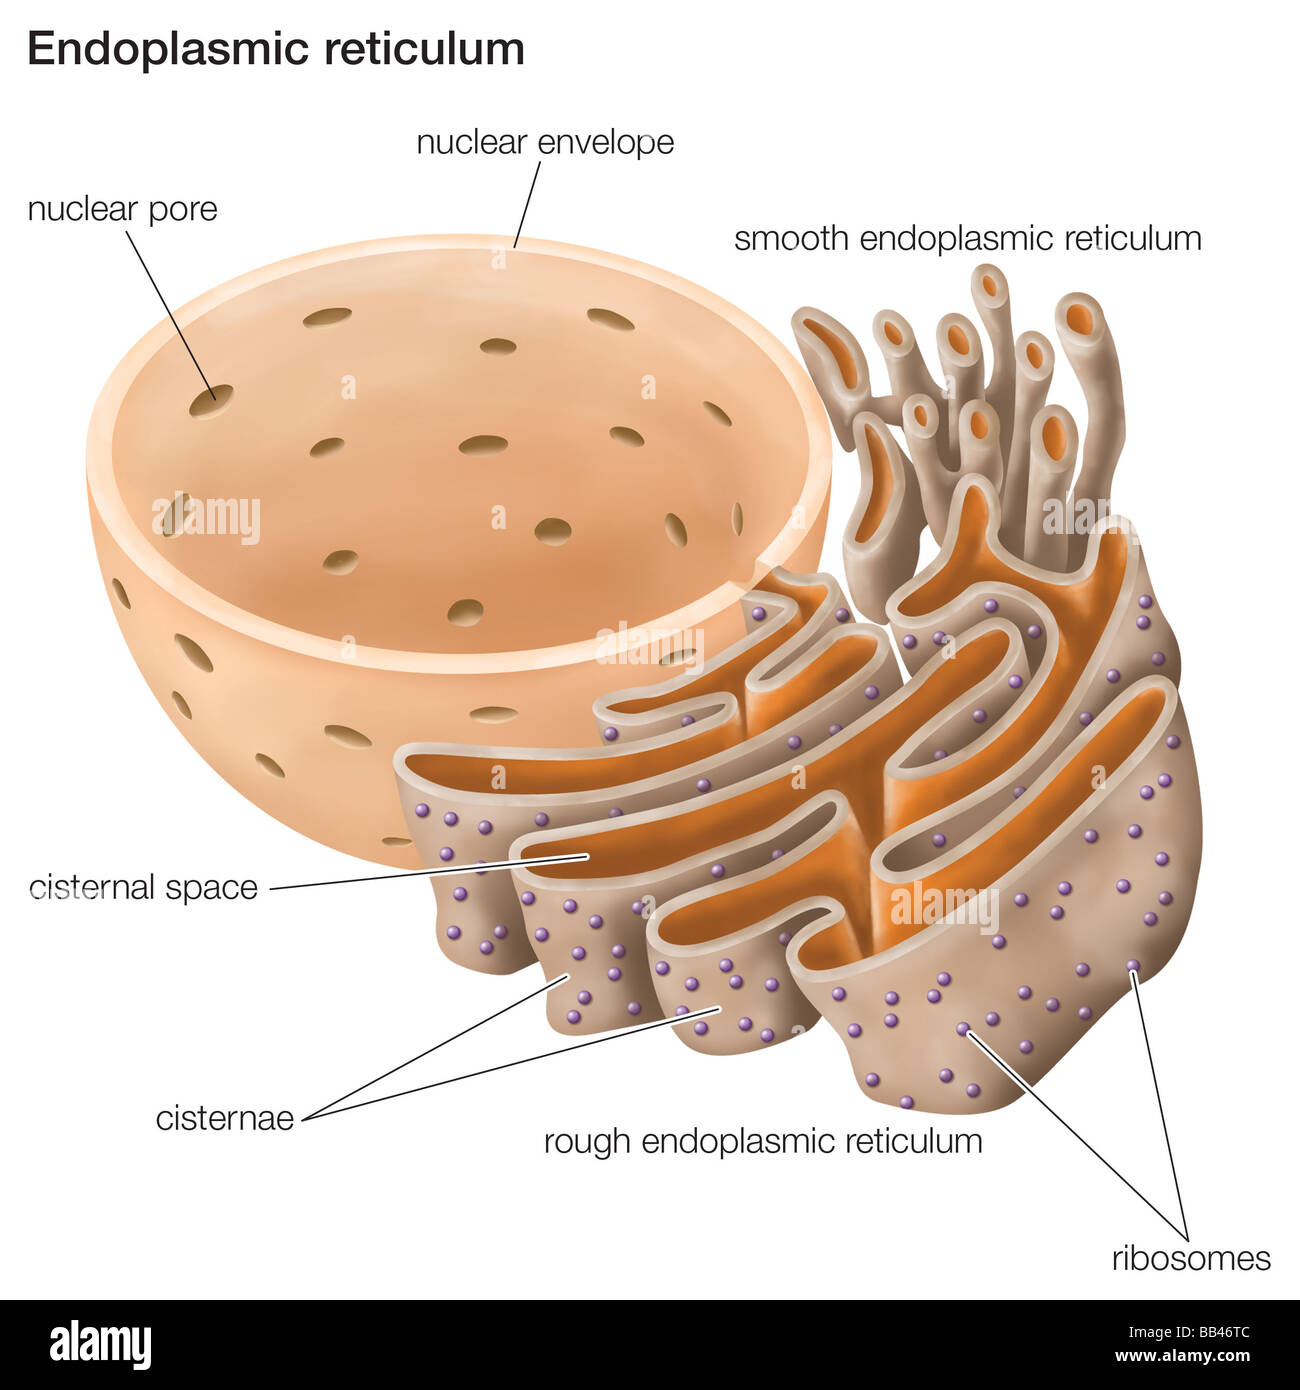 Il reticolo endoplasmatico svolge un ruolo importante nella biosintesi, la lavorazione e il trasporto delle proteine e lipidi. Foto Stock